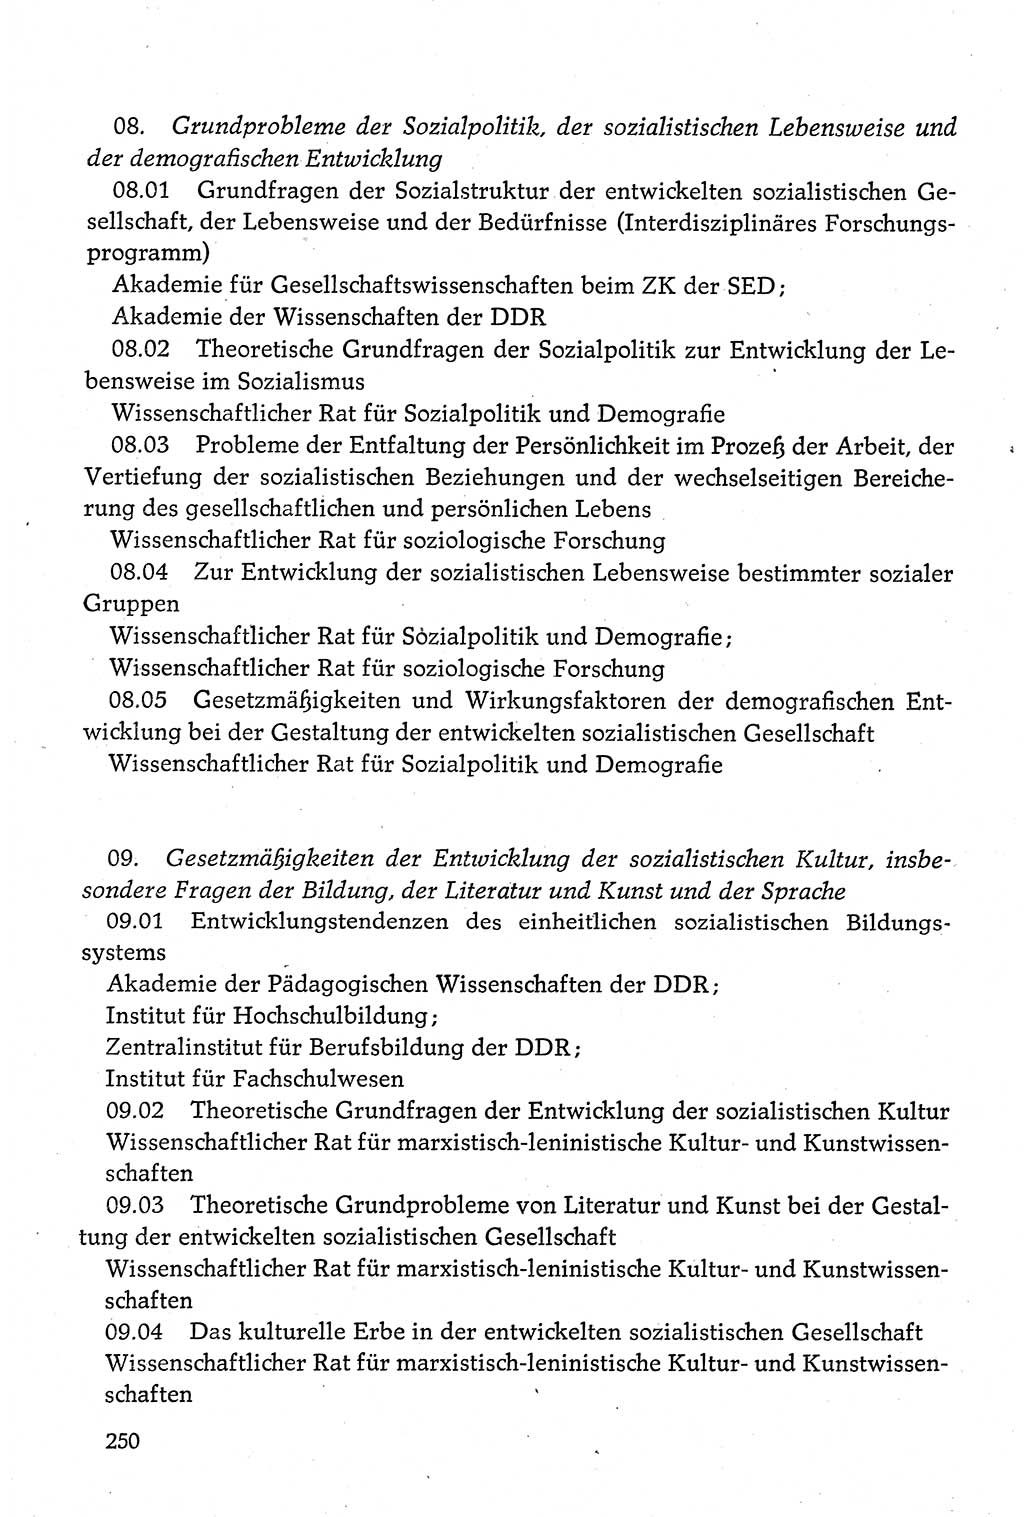 Dokumente der Sozialistischen Einheitspartei Deutschlands (SED) [Deutsche Demokratische Republik (DDR)] 1980-1981, Seite 250 (Dok. SED DDR 1980-1981, S. 250)